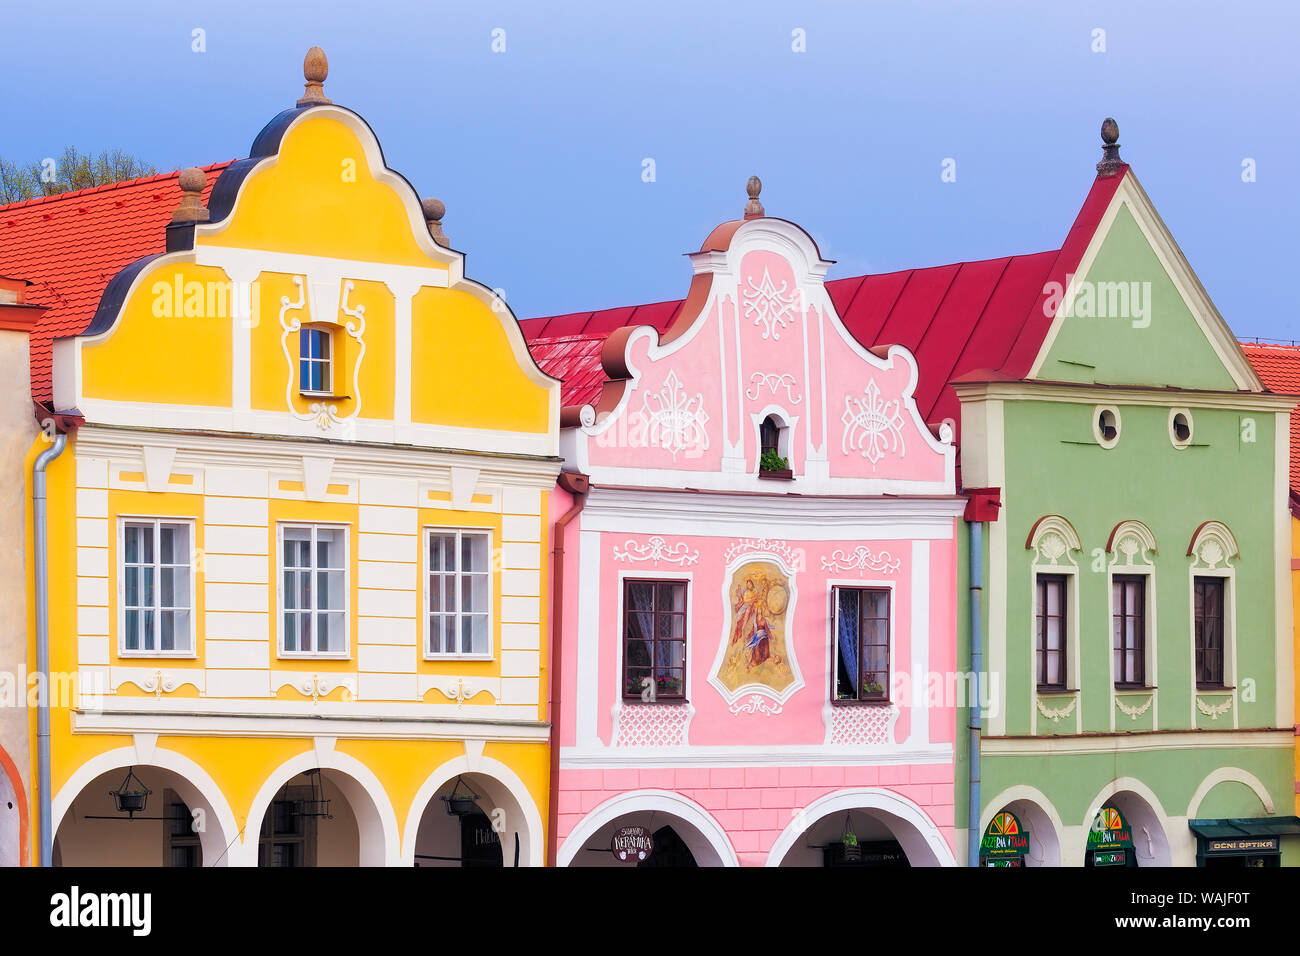 Repubblica ceca, Telc. Case colorate sulla piazza principale. Credito come: Jim Nilsen Jaynes / Galleria / DanitaDelimont.com Foto Stock